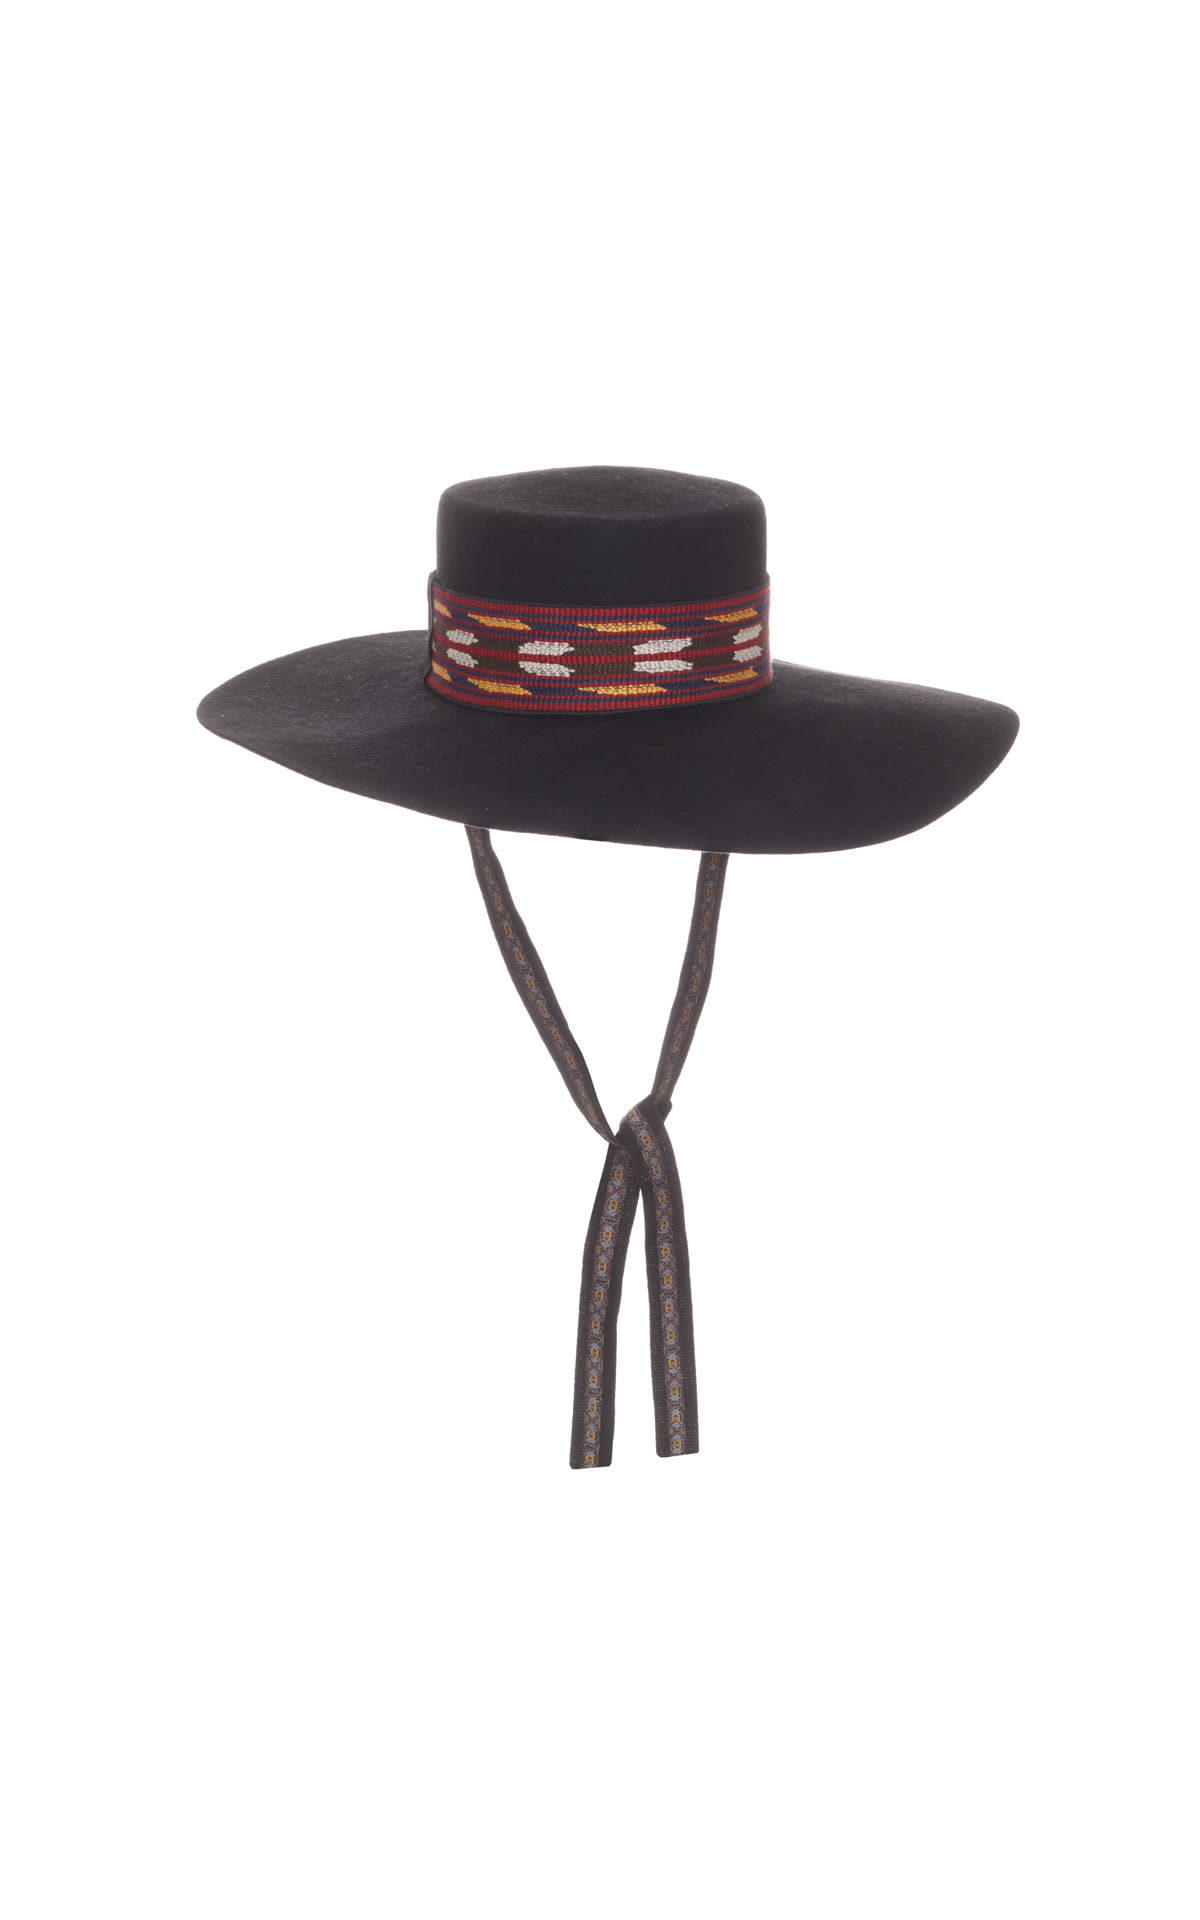 Etro Black hat from Bicester Village